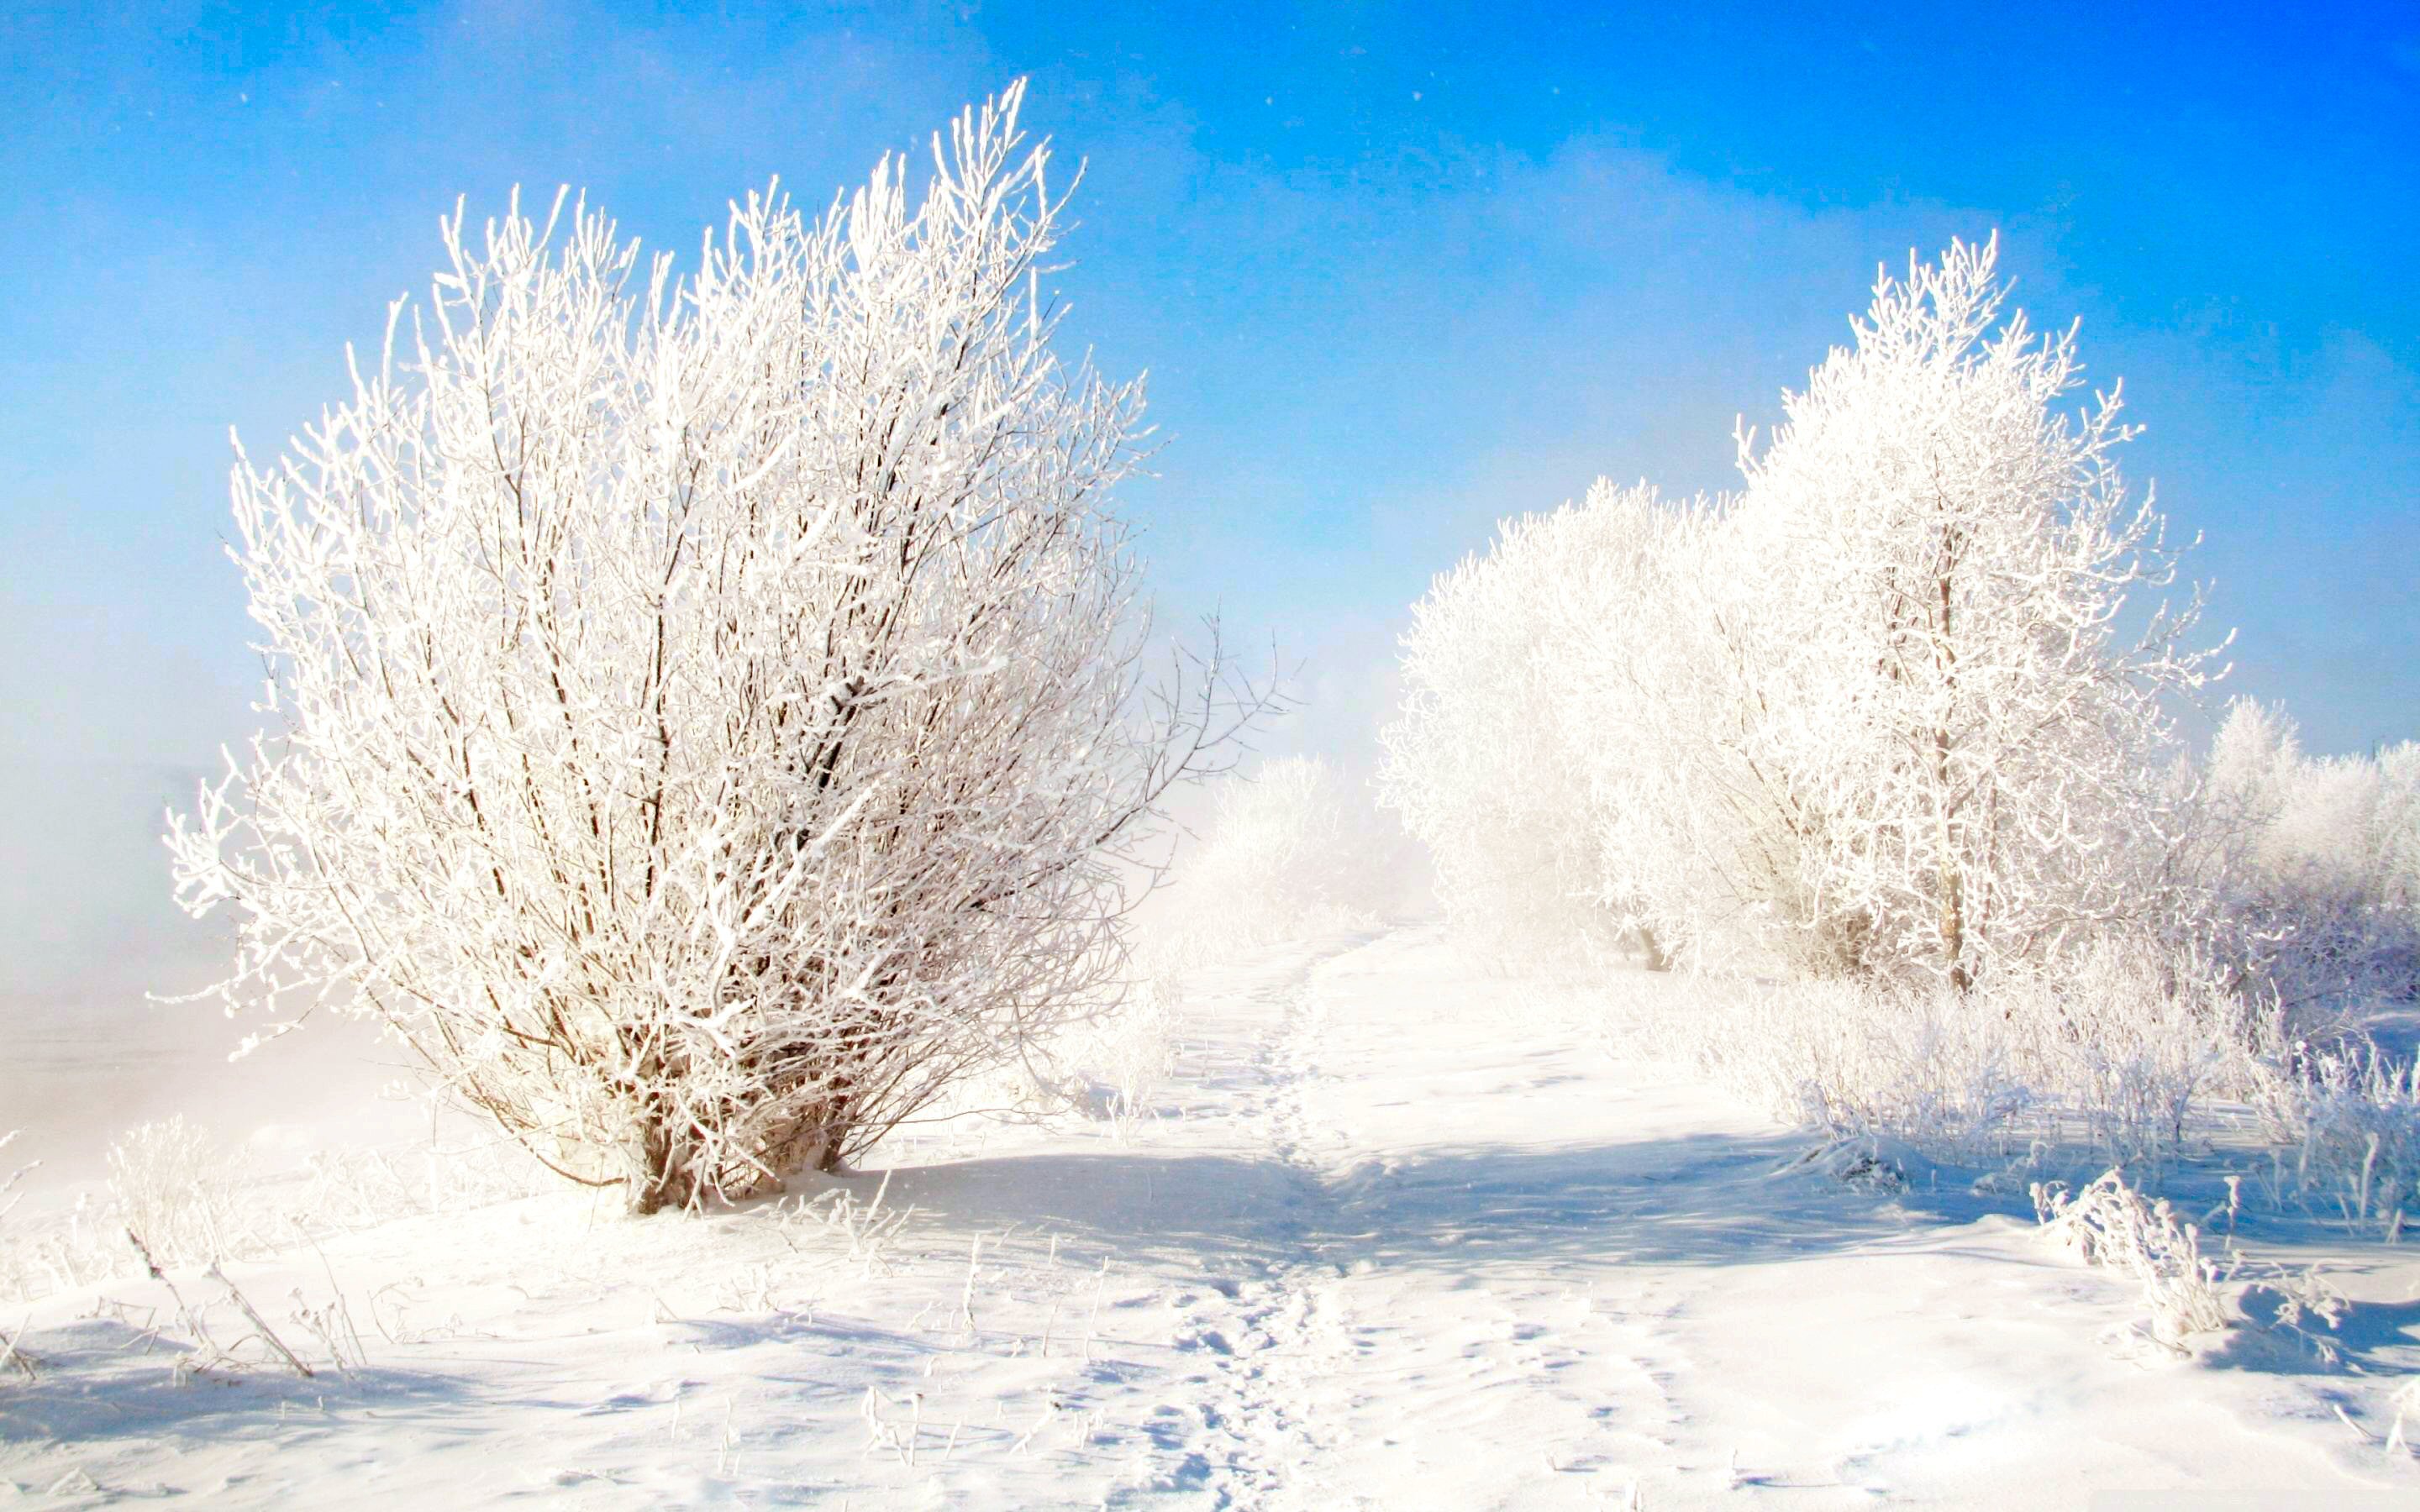 Скачать обои бесплатно Зима, Небо, Снег, Дерево, Синий, Белый, Земля/природа картинка на рабочий стол ПК